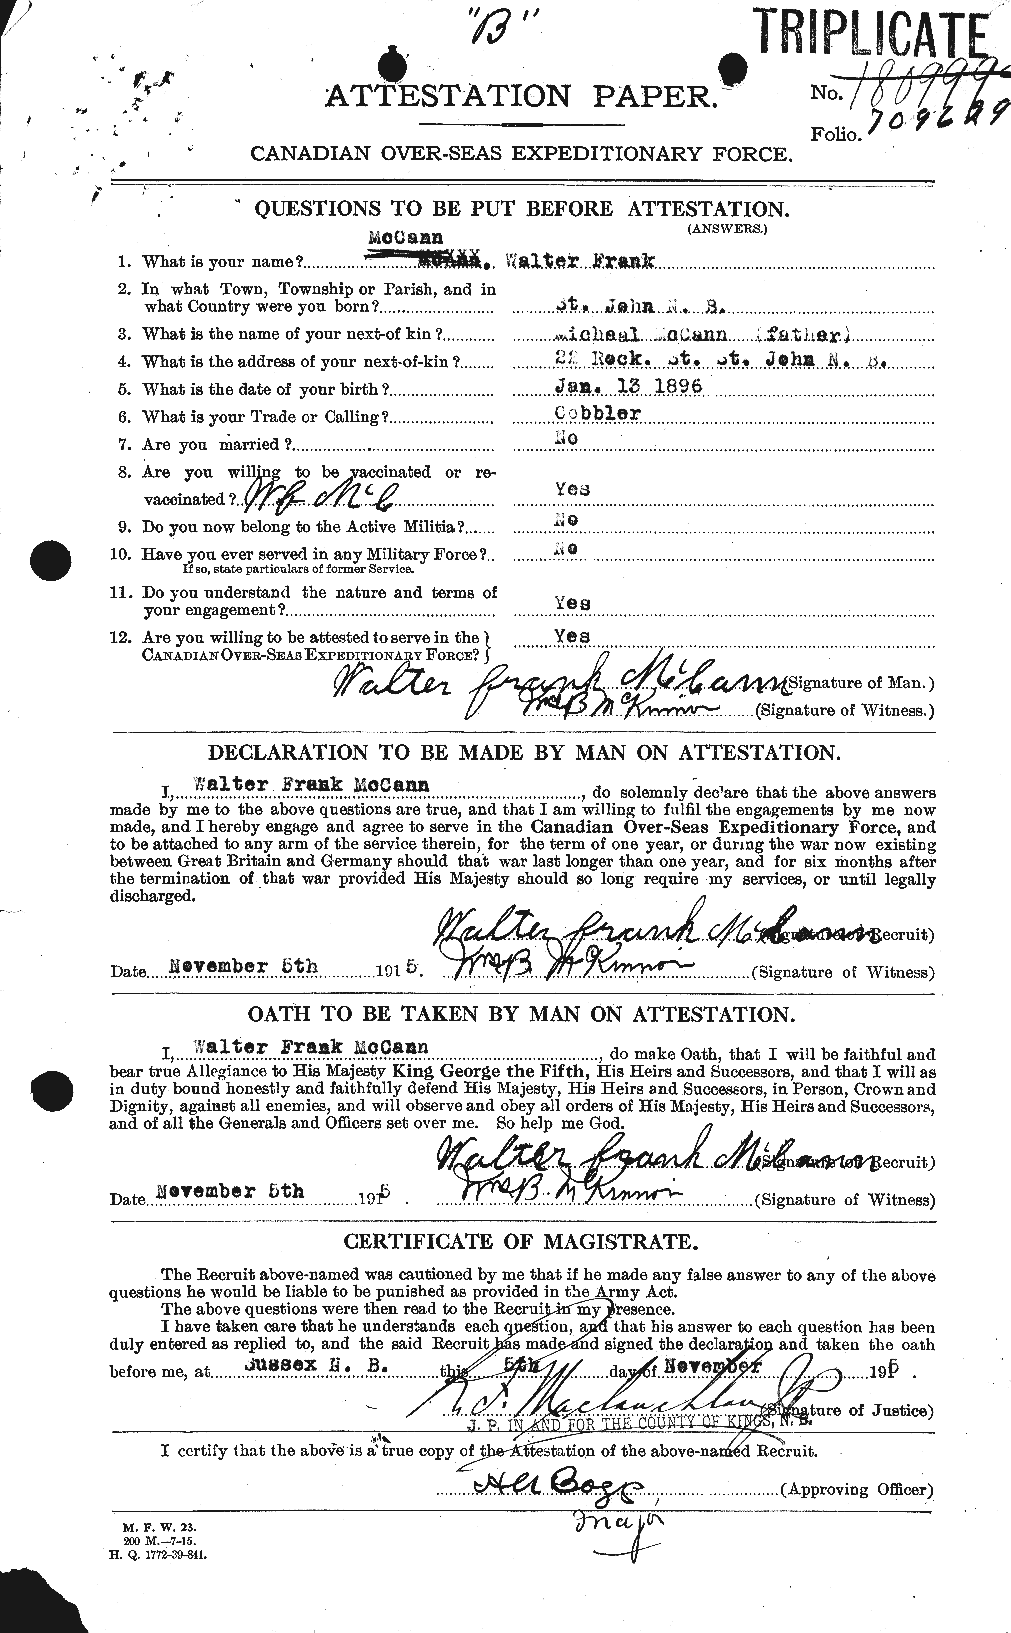 Dossiers du Personnel de la Première Guerre mondiale - CEC 132667a